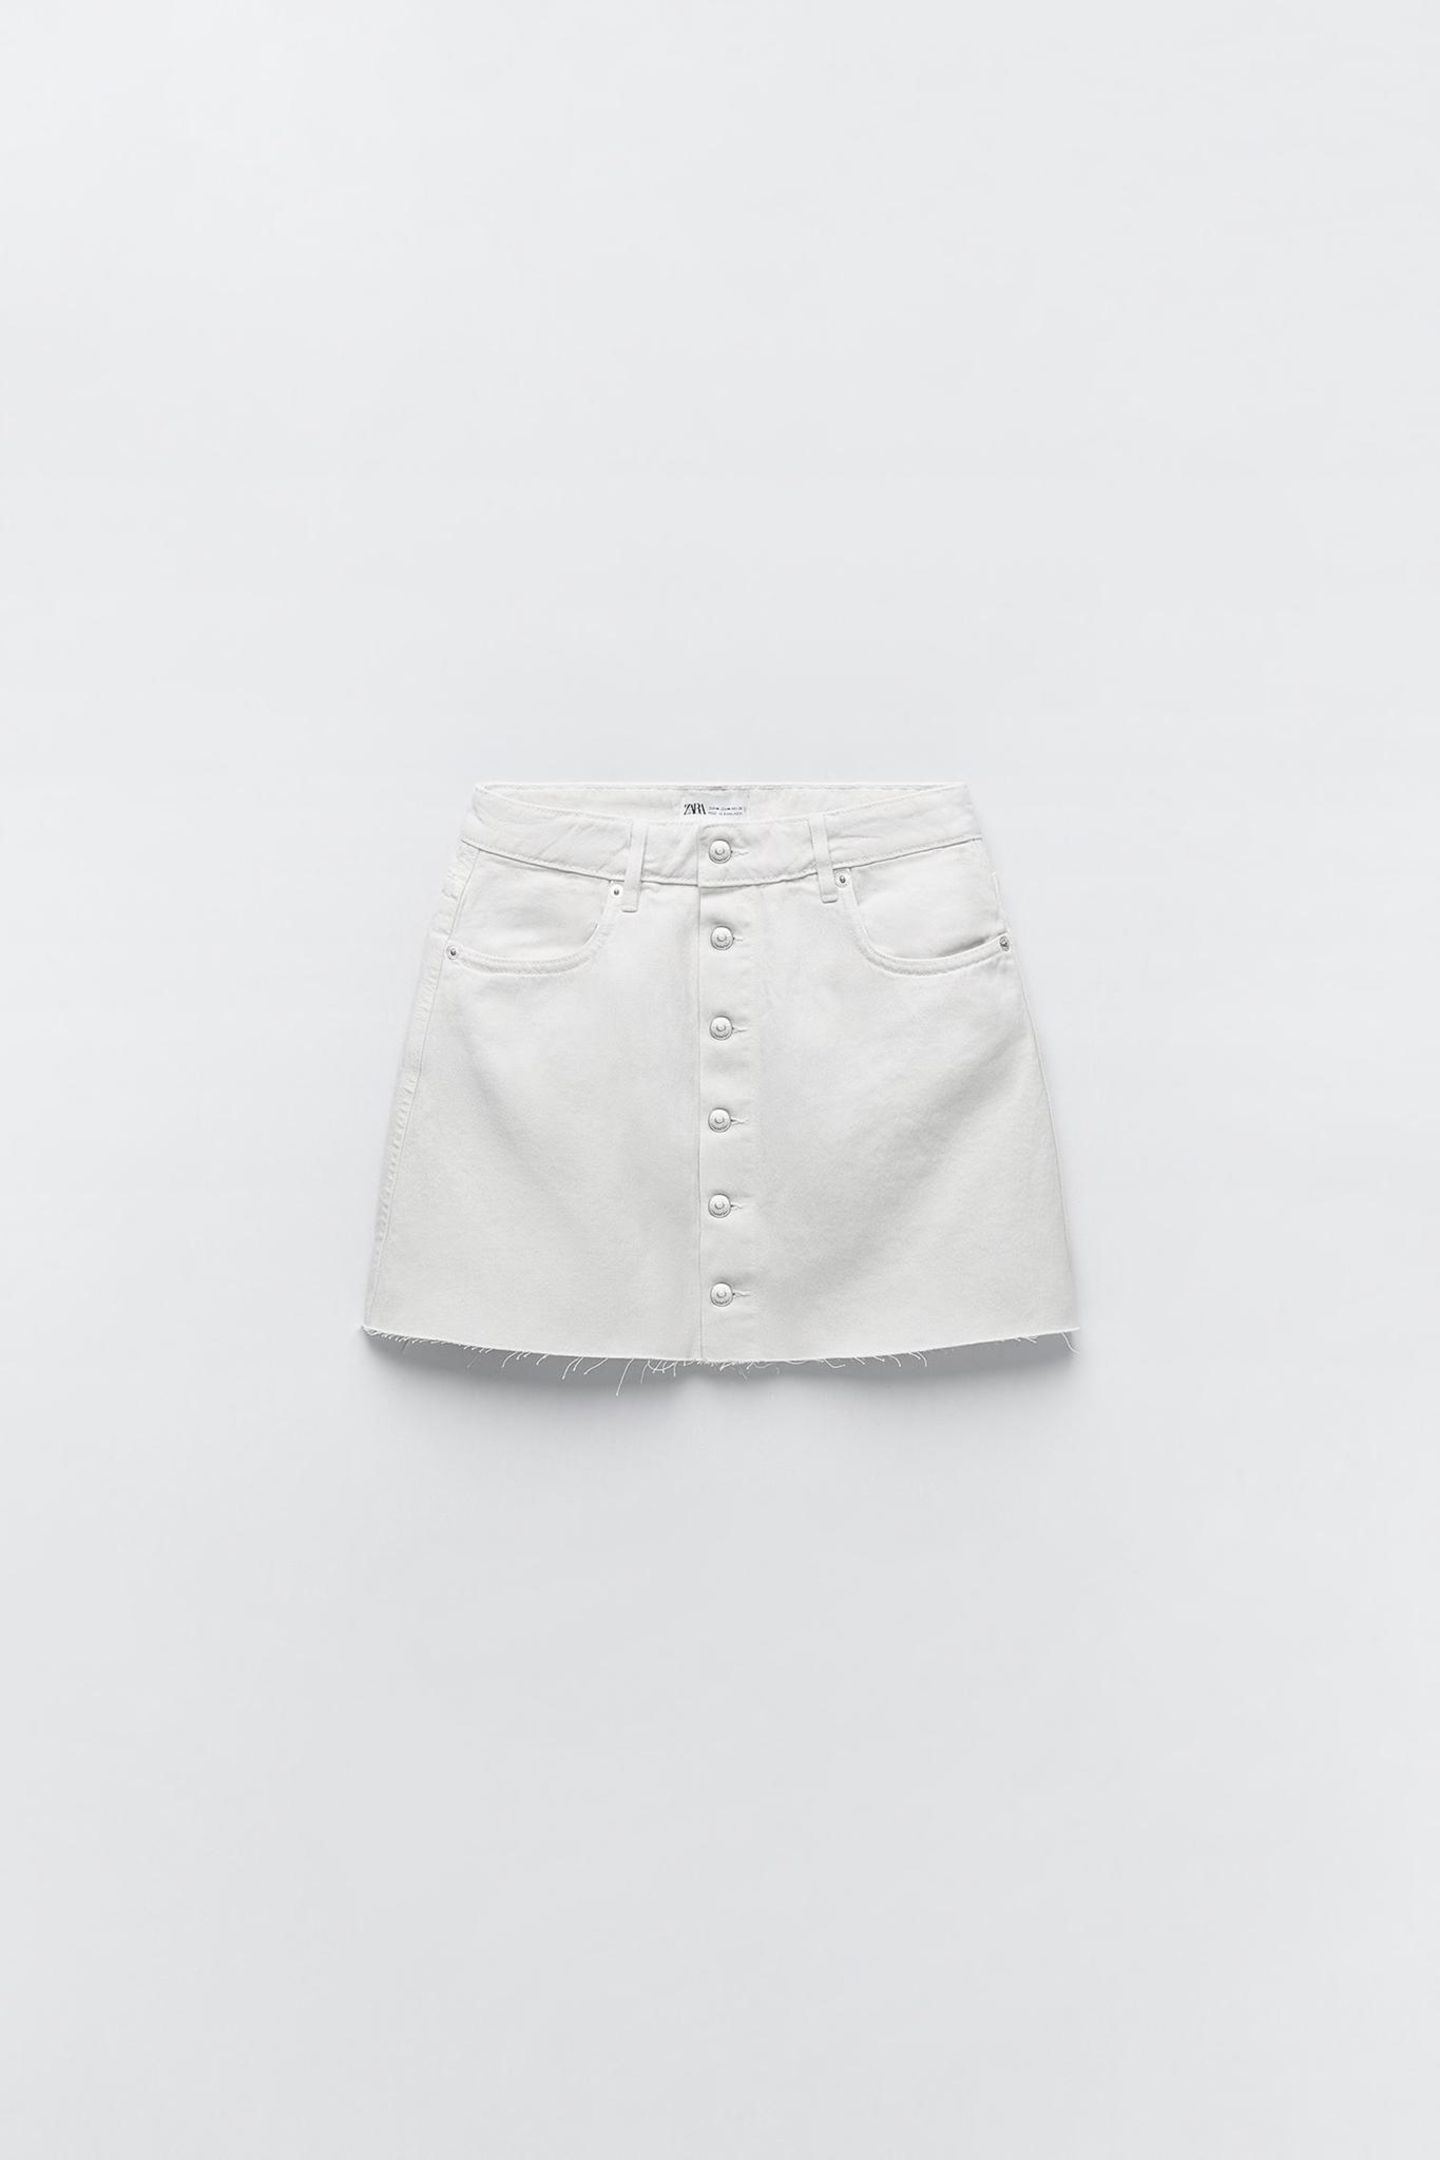 Ein weißer Jeansrock sieht nicht nur im Sommer gut aus – deshalb schlagen wir hier sofort zu. Von Zara, ursprünglich für rund 20 Euro erhältlich.